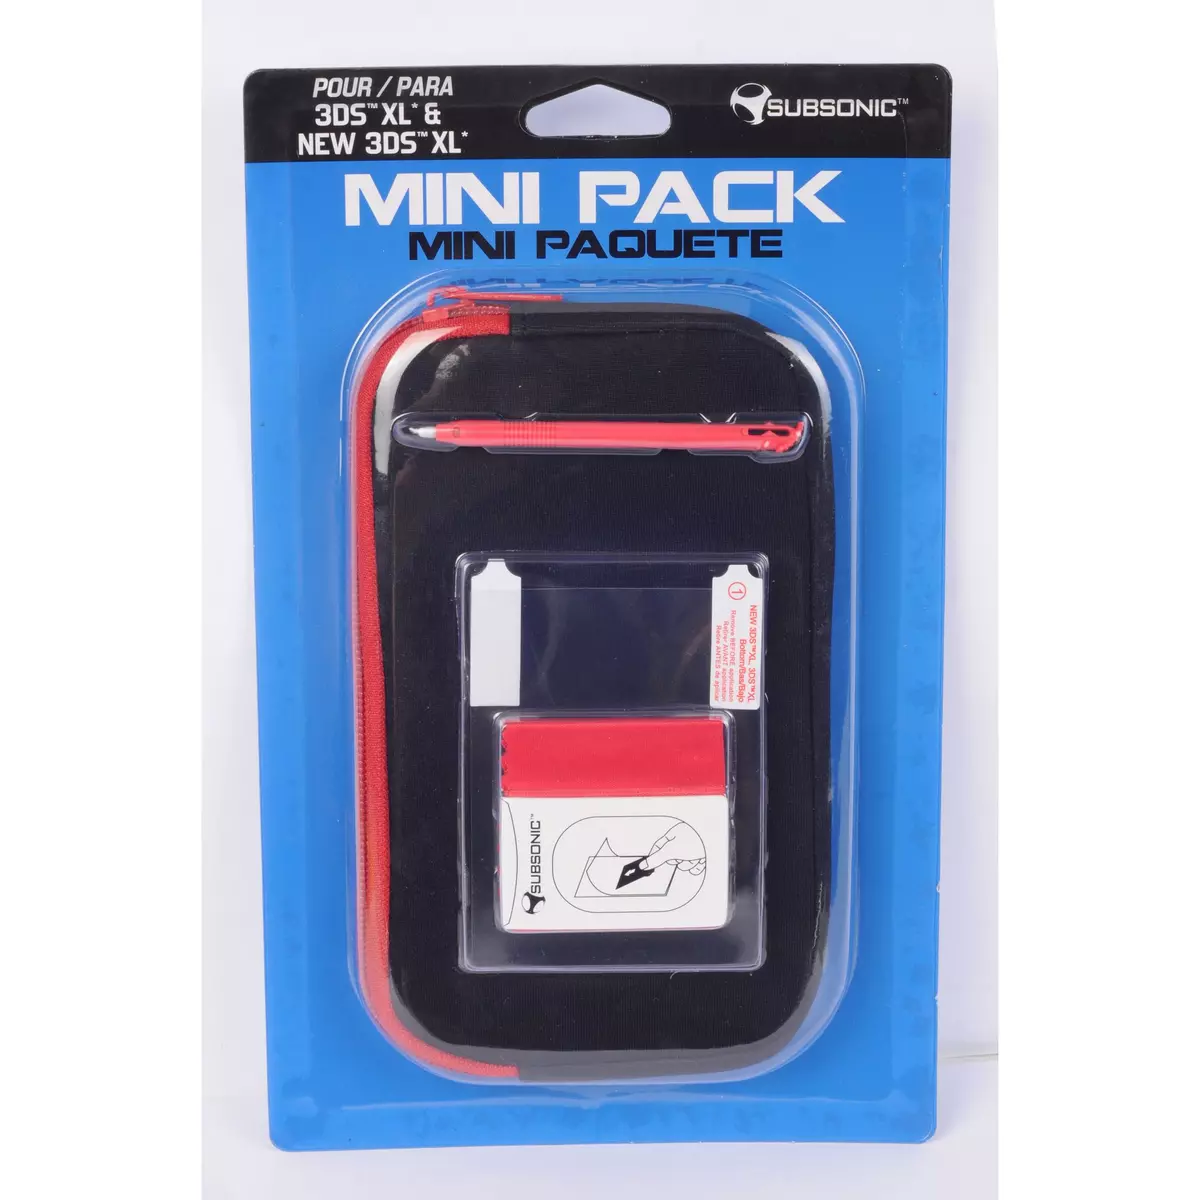 Minipack d'accessoires pour 3DS XL - New 3DS XL